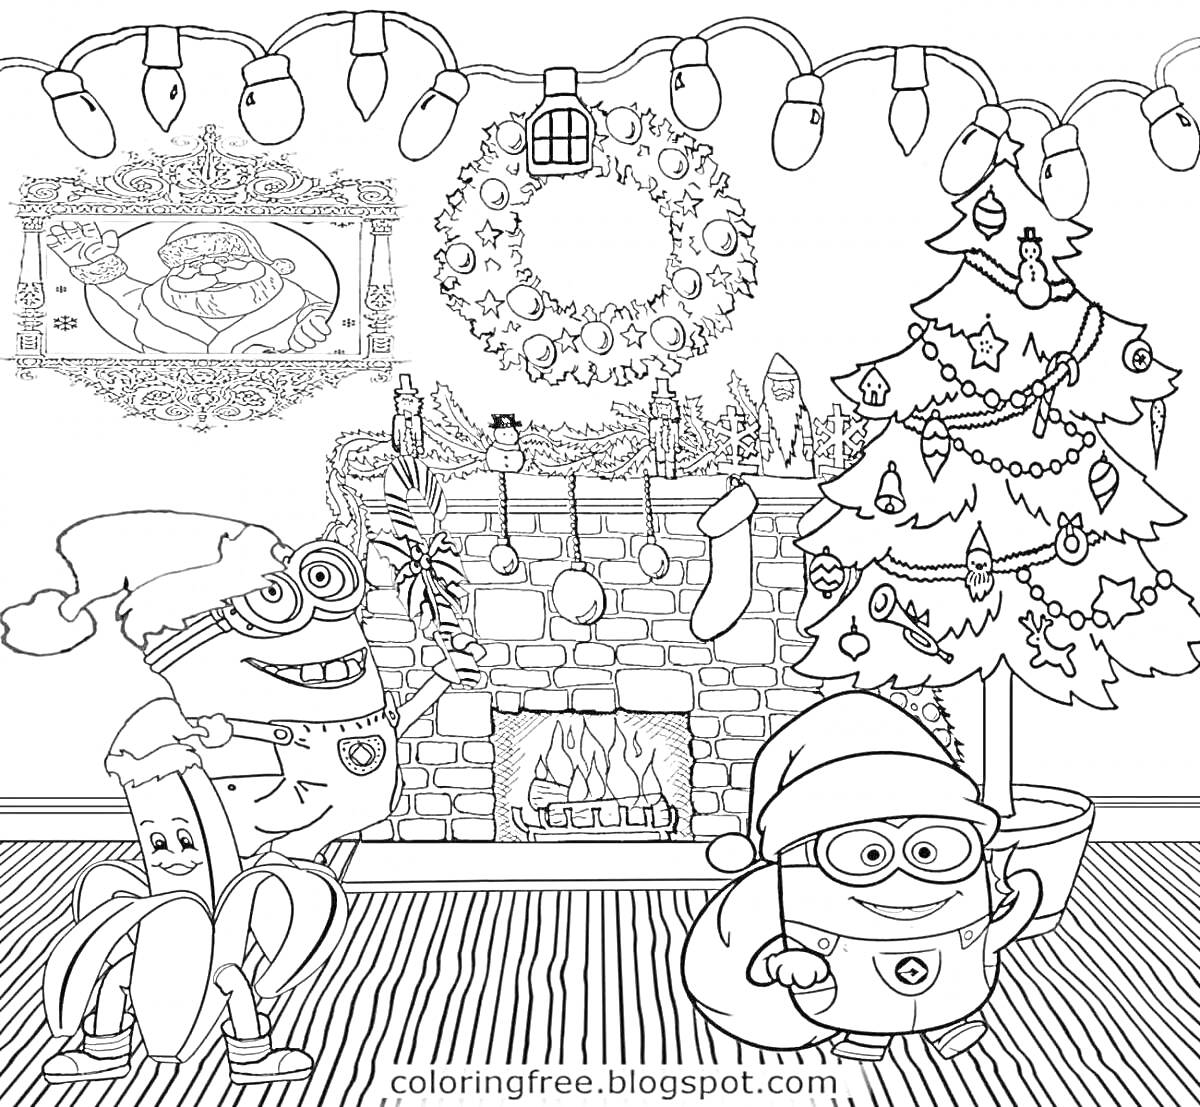 Раскраска Миньоны празднуют Новый год возле камина с горящим огнём, новогодней ёлкой, венком, гирляндами и рождественским чулком